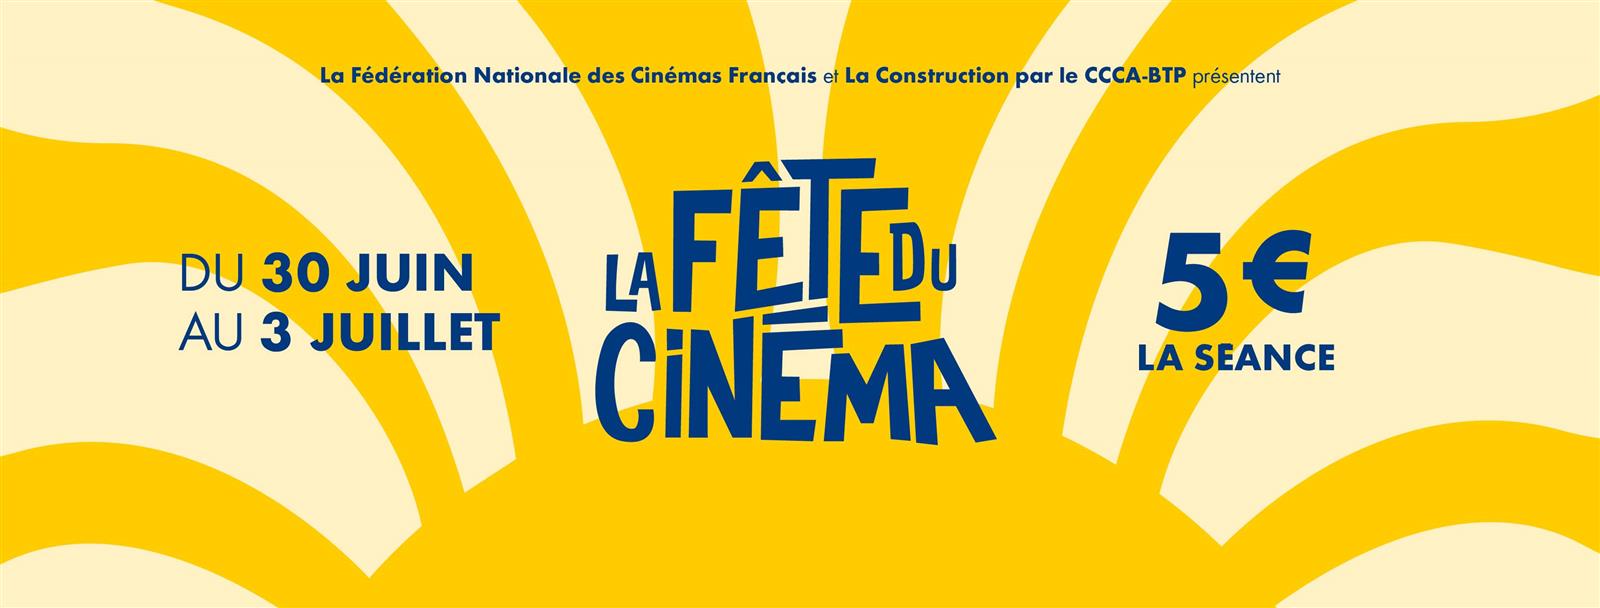 Cinéma : Bad boy ride or die - Fête du cinéma 5€